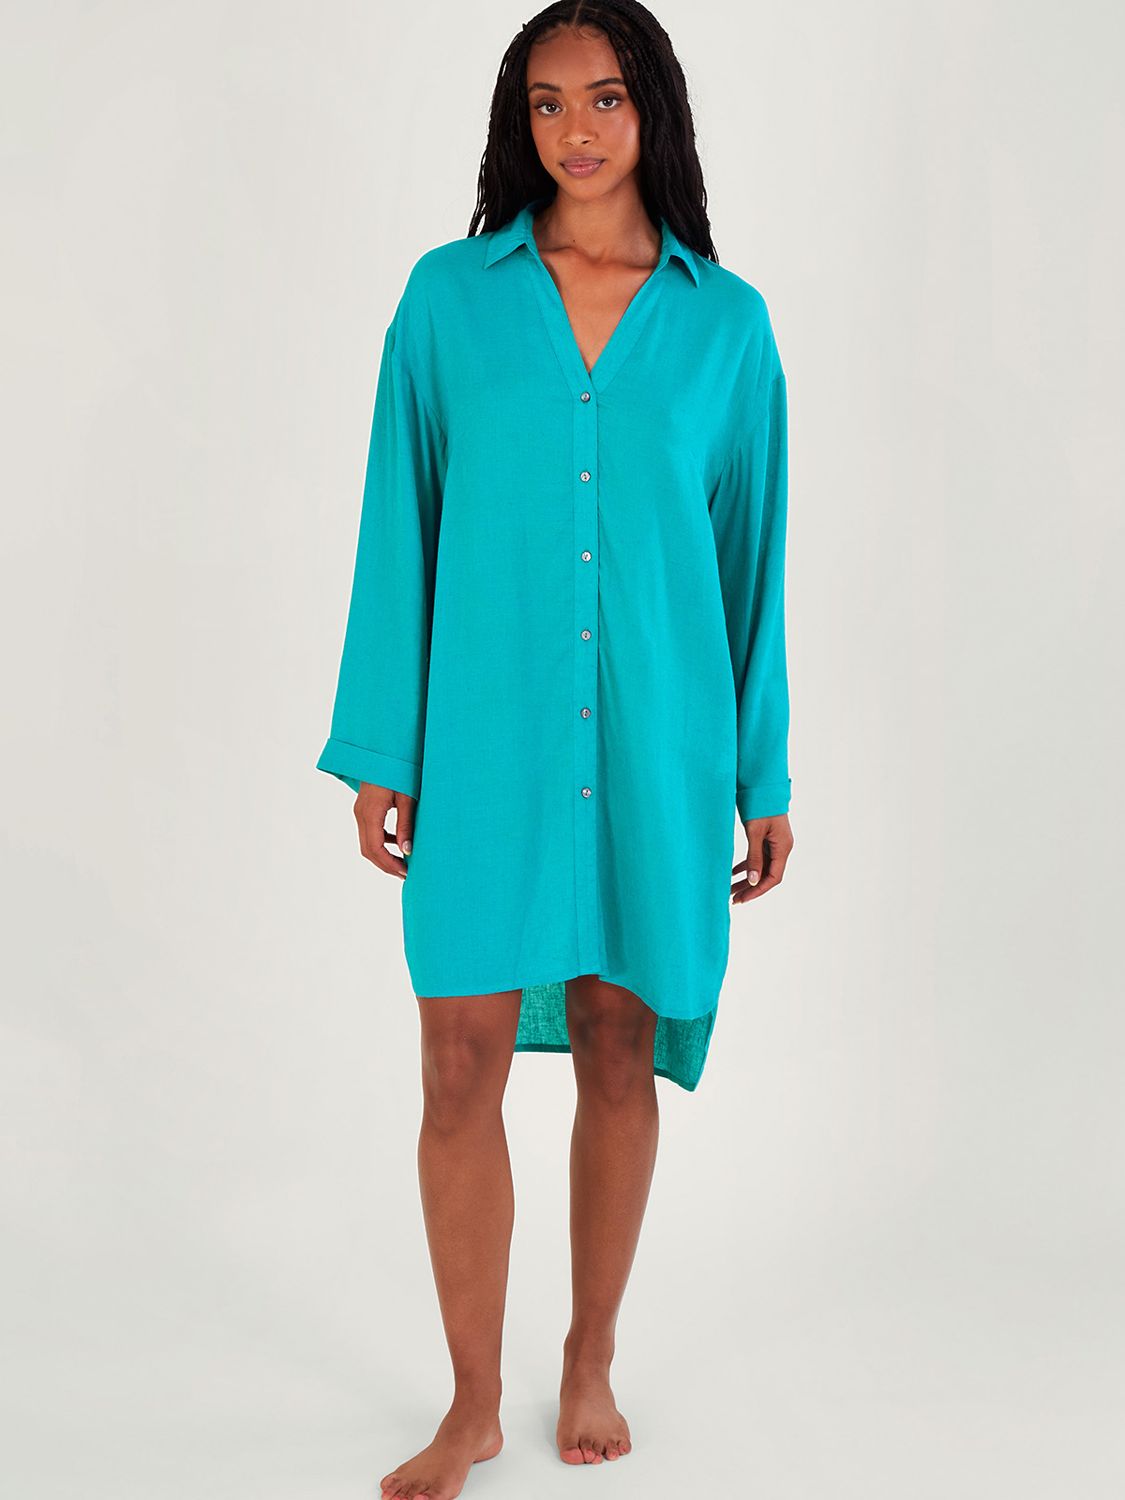 Monsoon Esme Linen Blend Beach Shirt Dress, Turquoise, S